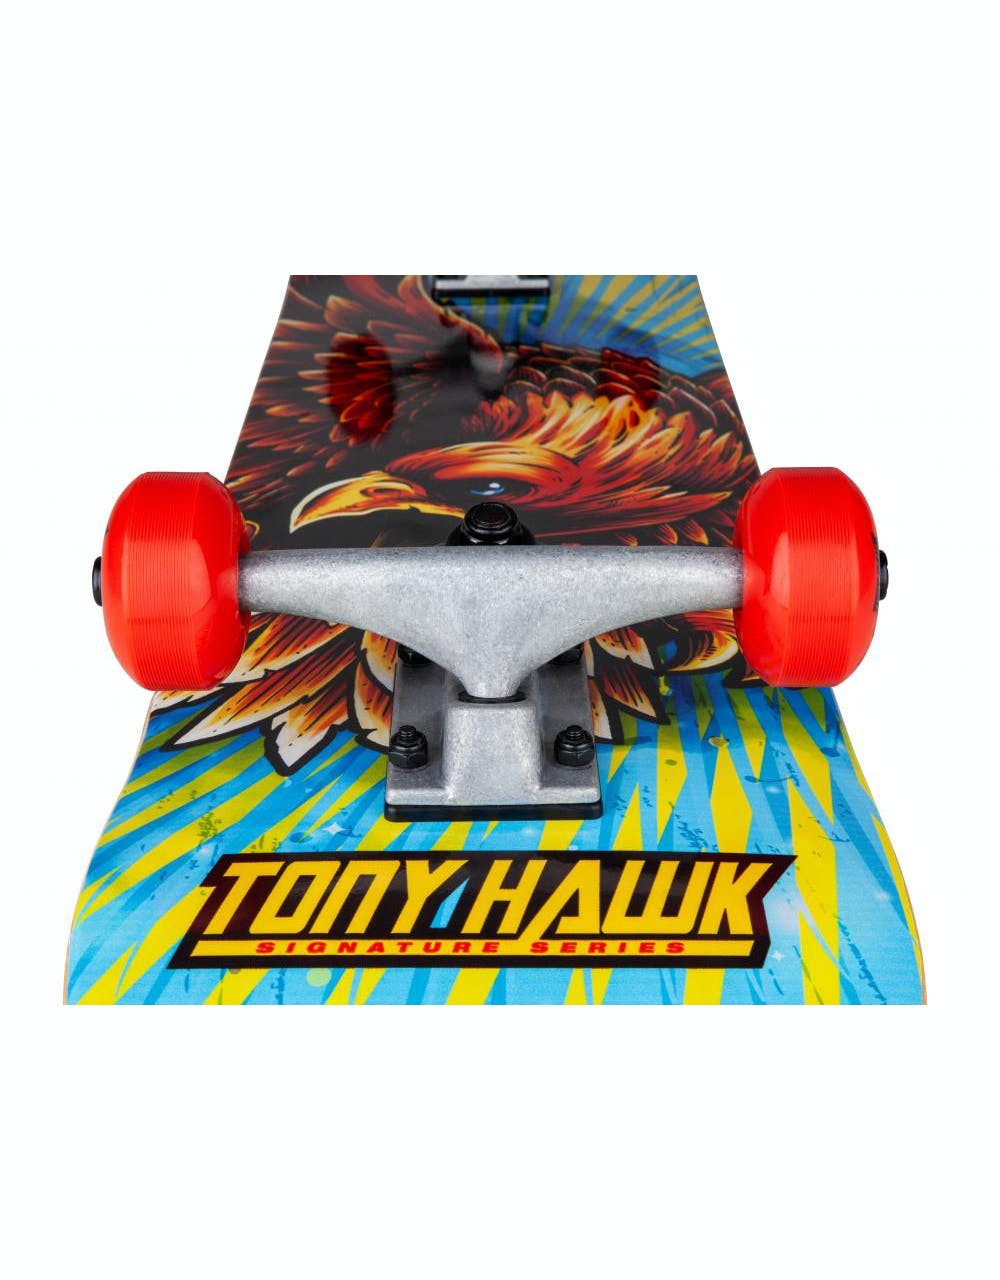 Tony Hawk 180 Golden Hawk Complete Skateboard - 7.75"